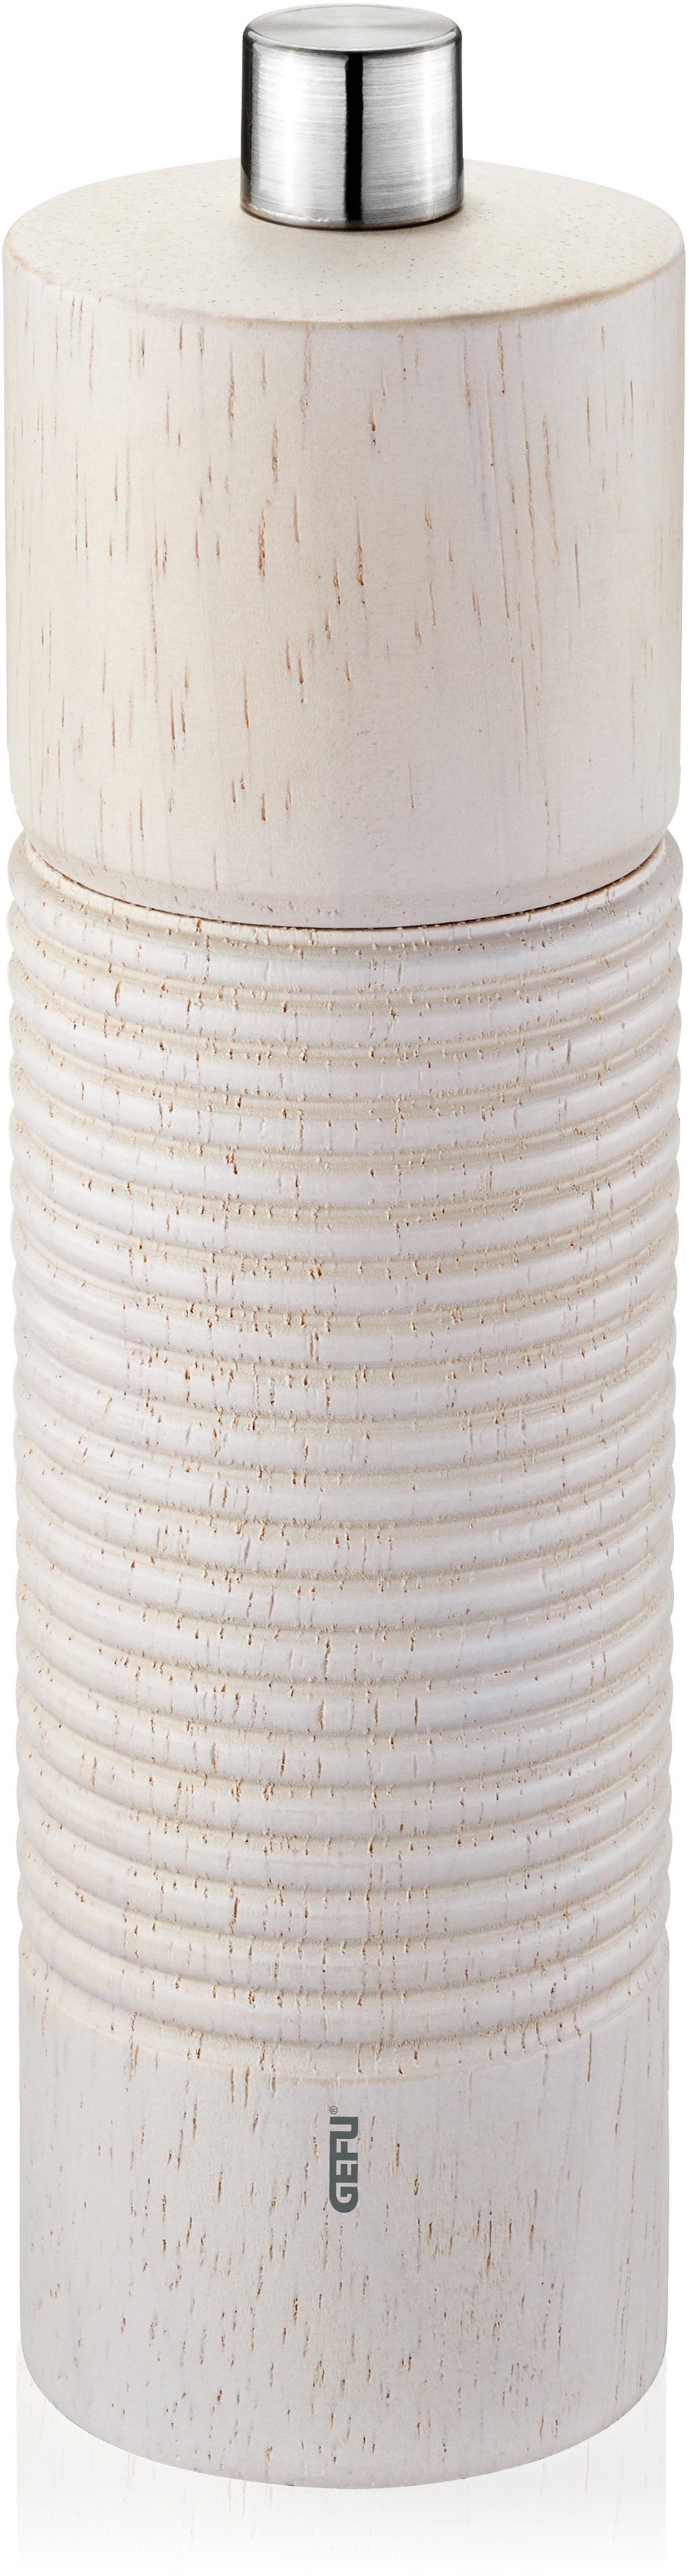 GEFU Salz-/Pfeffermühle TEDORO manuell, stufenlos einstellbares Keramikmahlwerk silberfarben/weiß